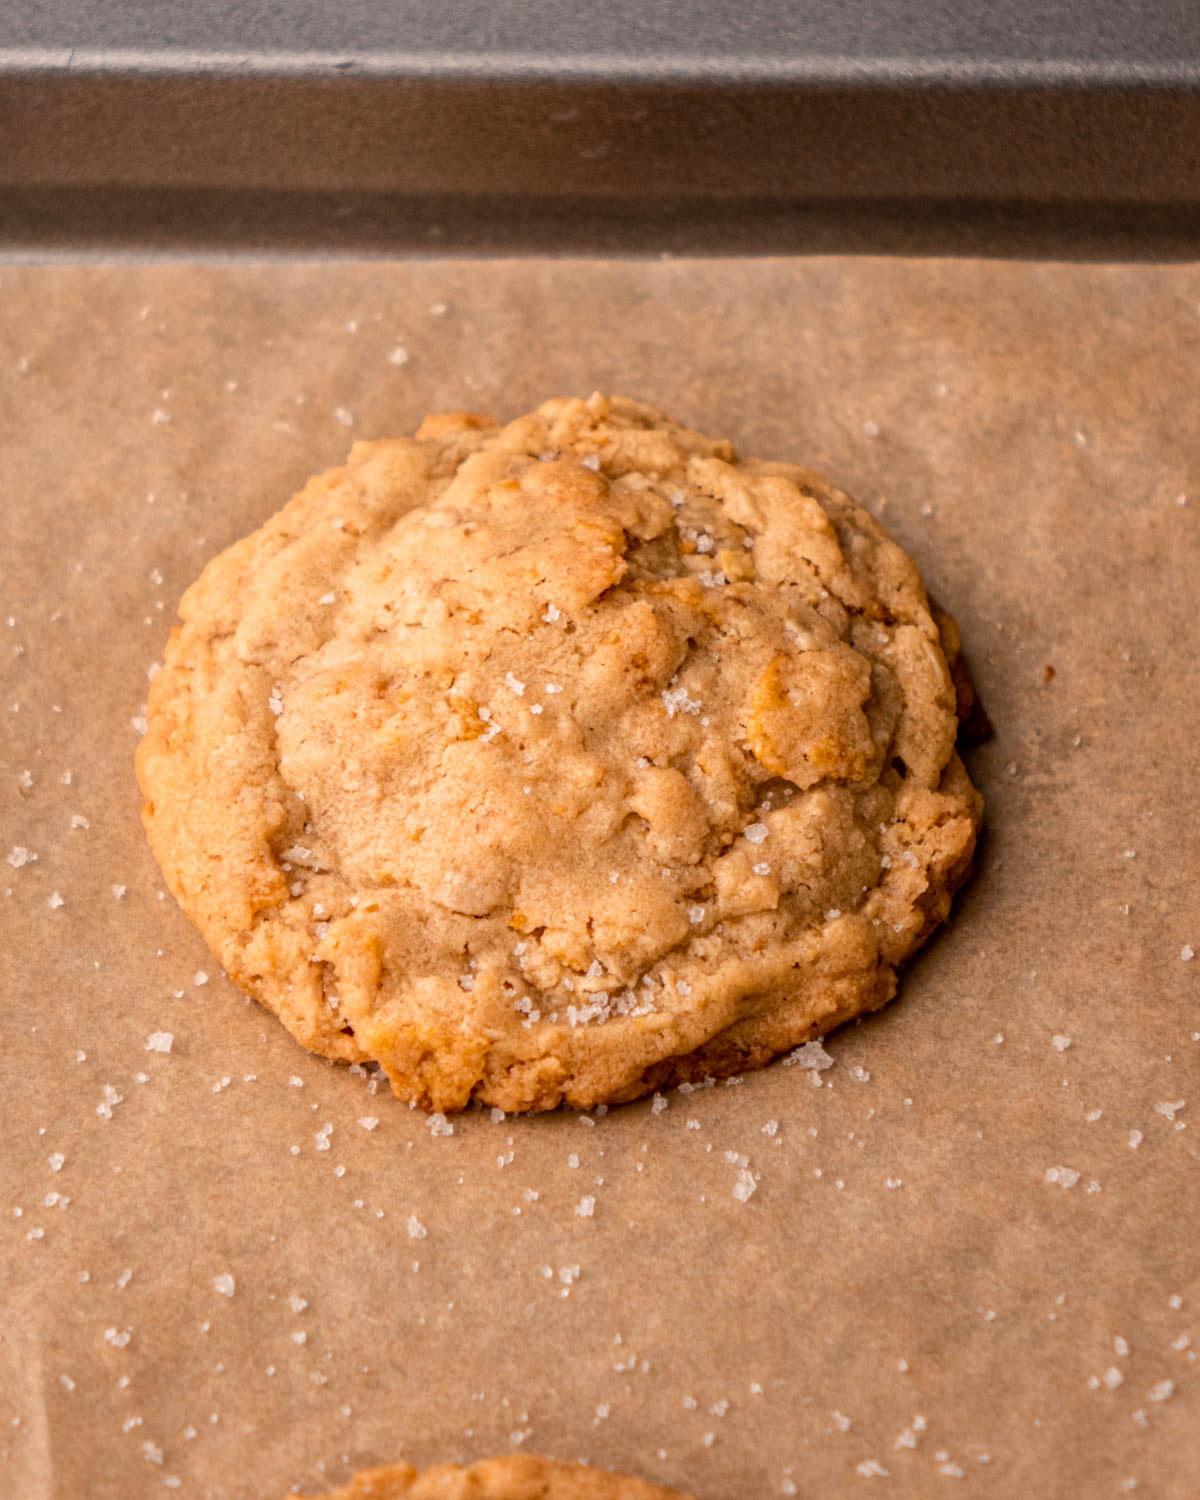 cornflake cookie on baking sheet after baking